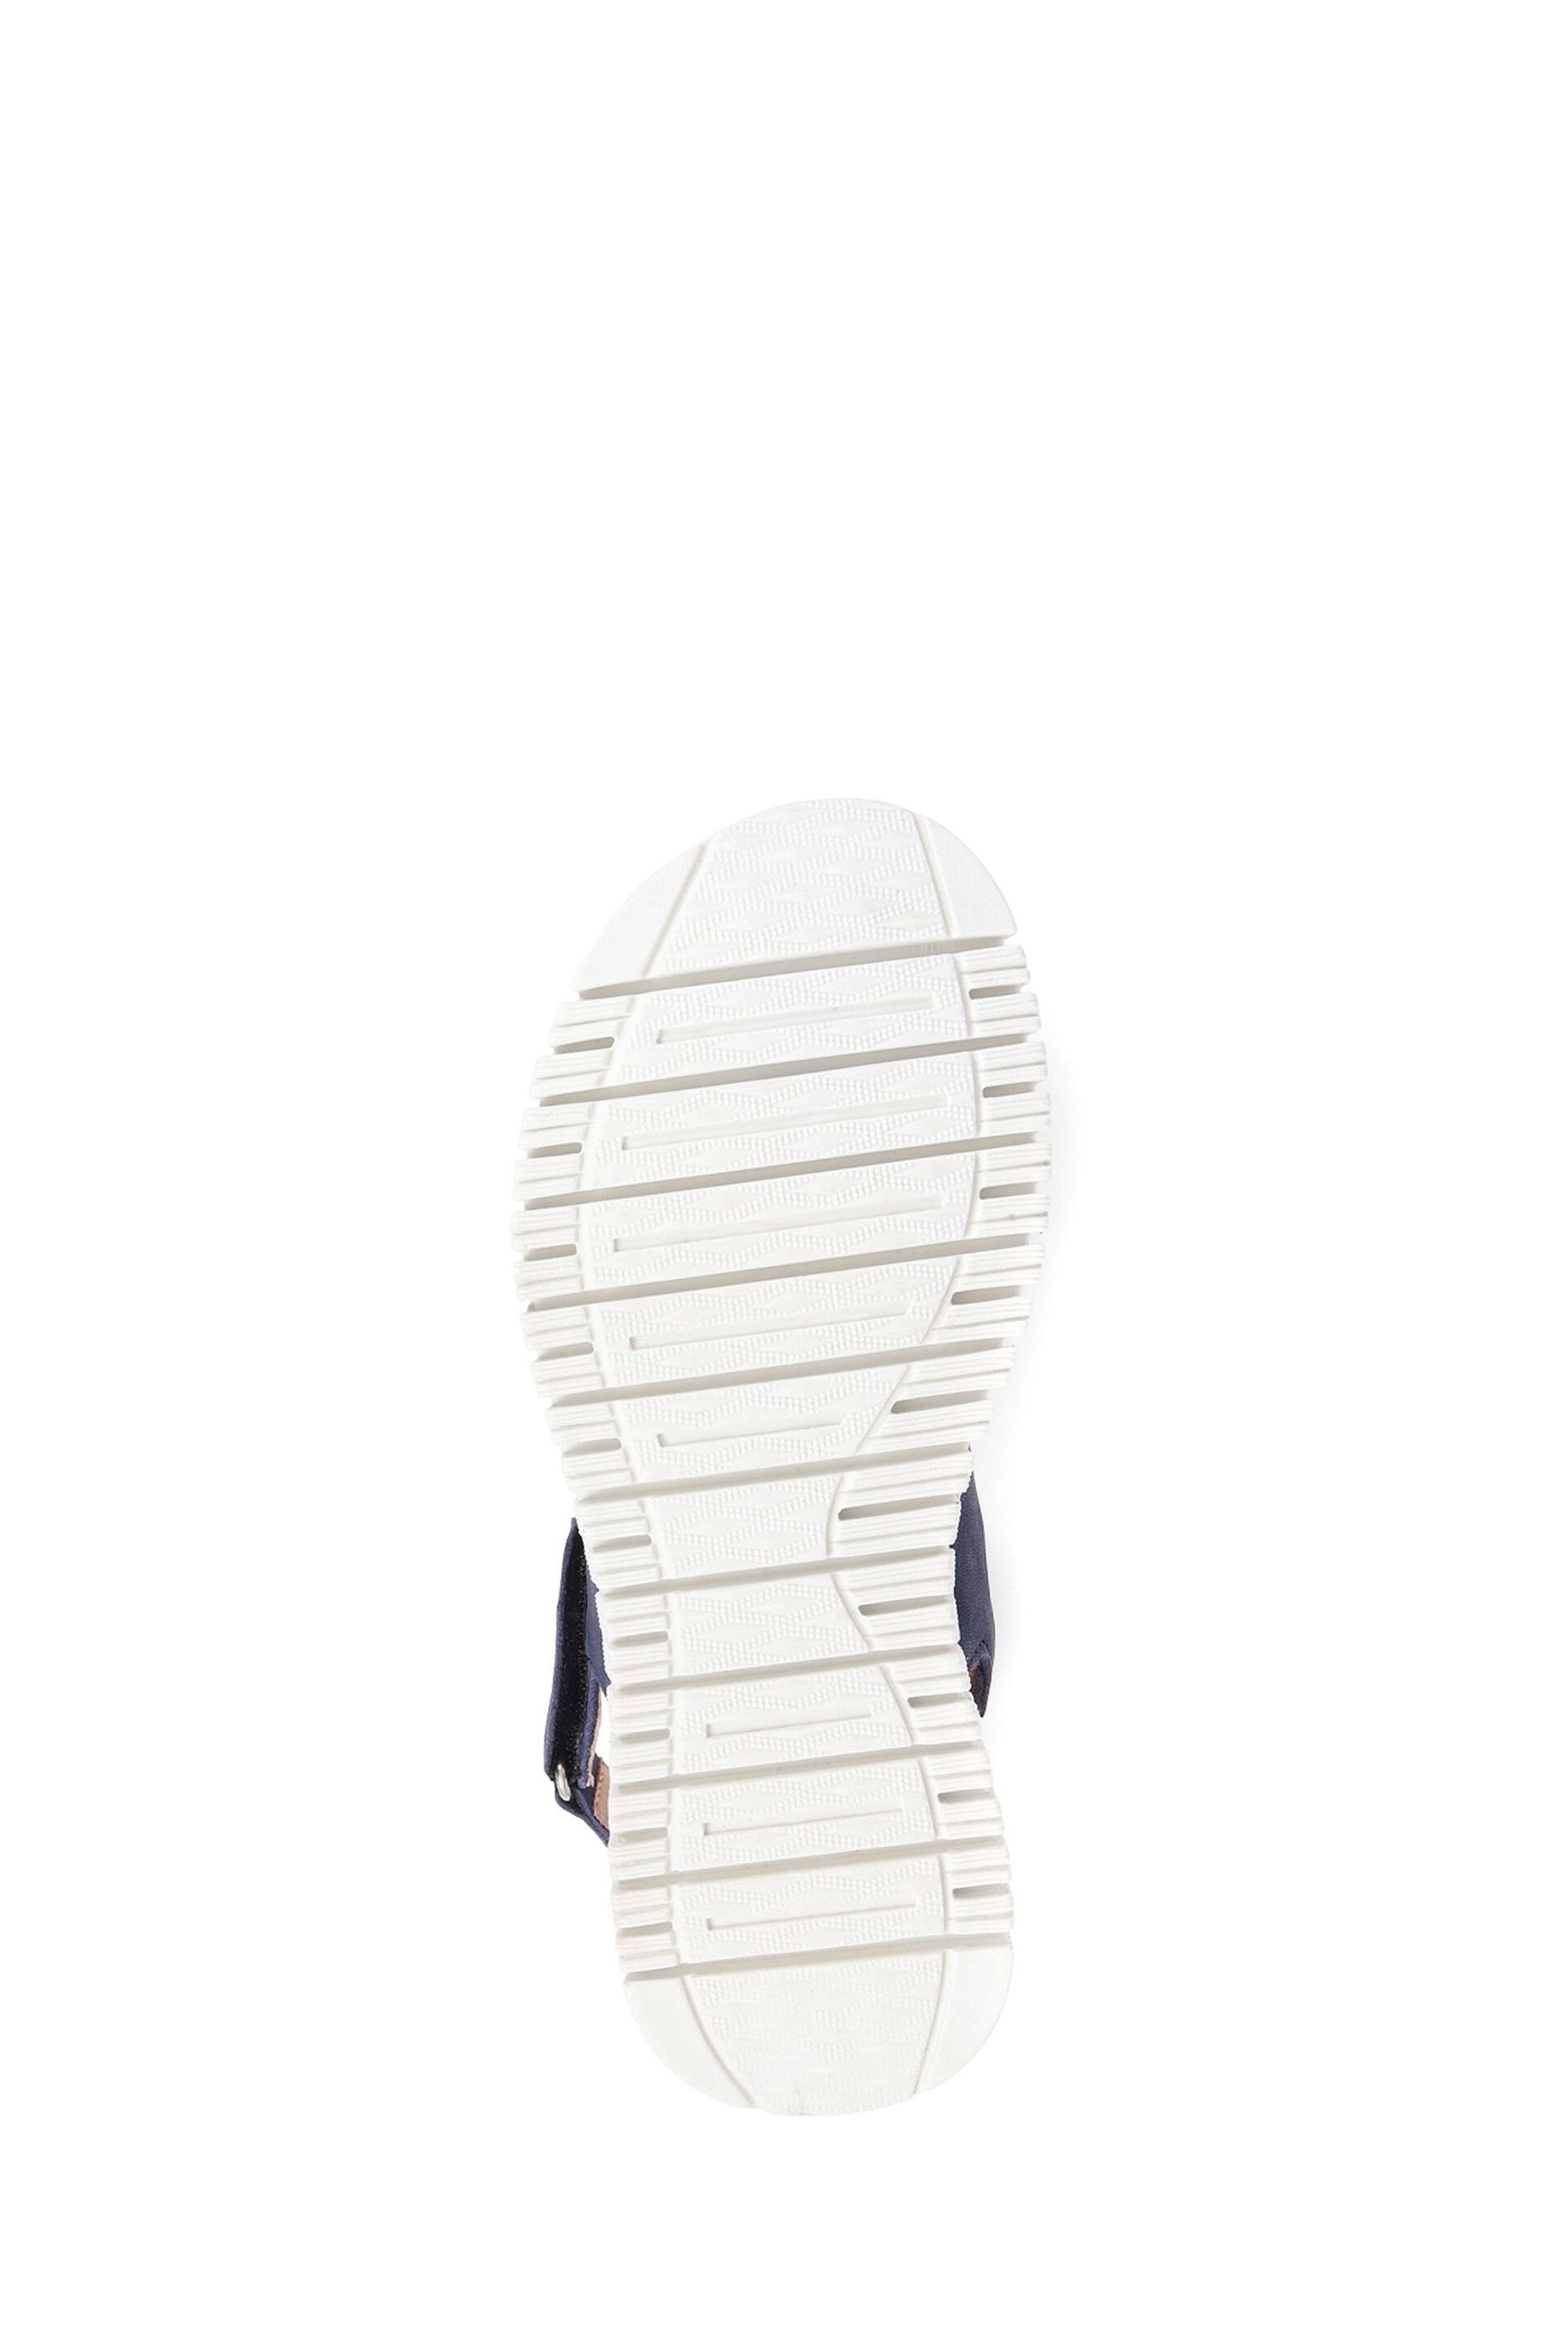 Van Dal Leather Platform Sandals - Image 5 of 5